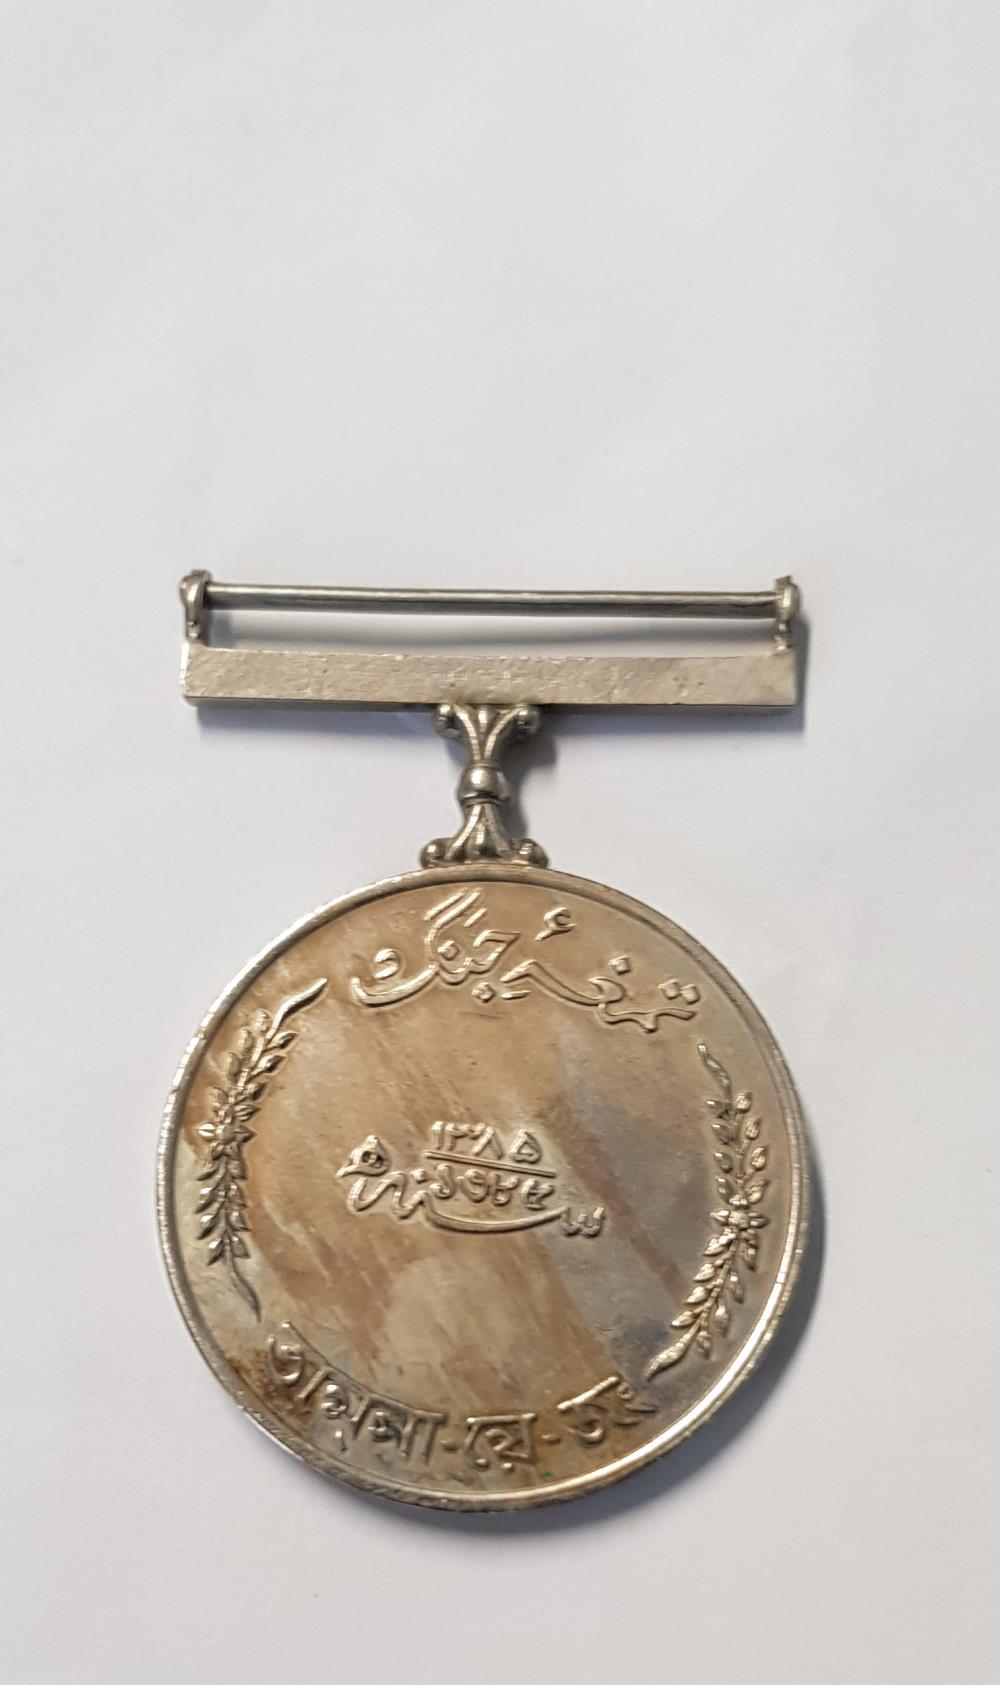 Pakistan - War Medal 1965